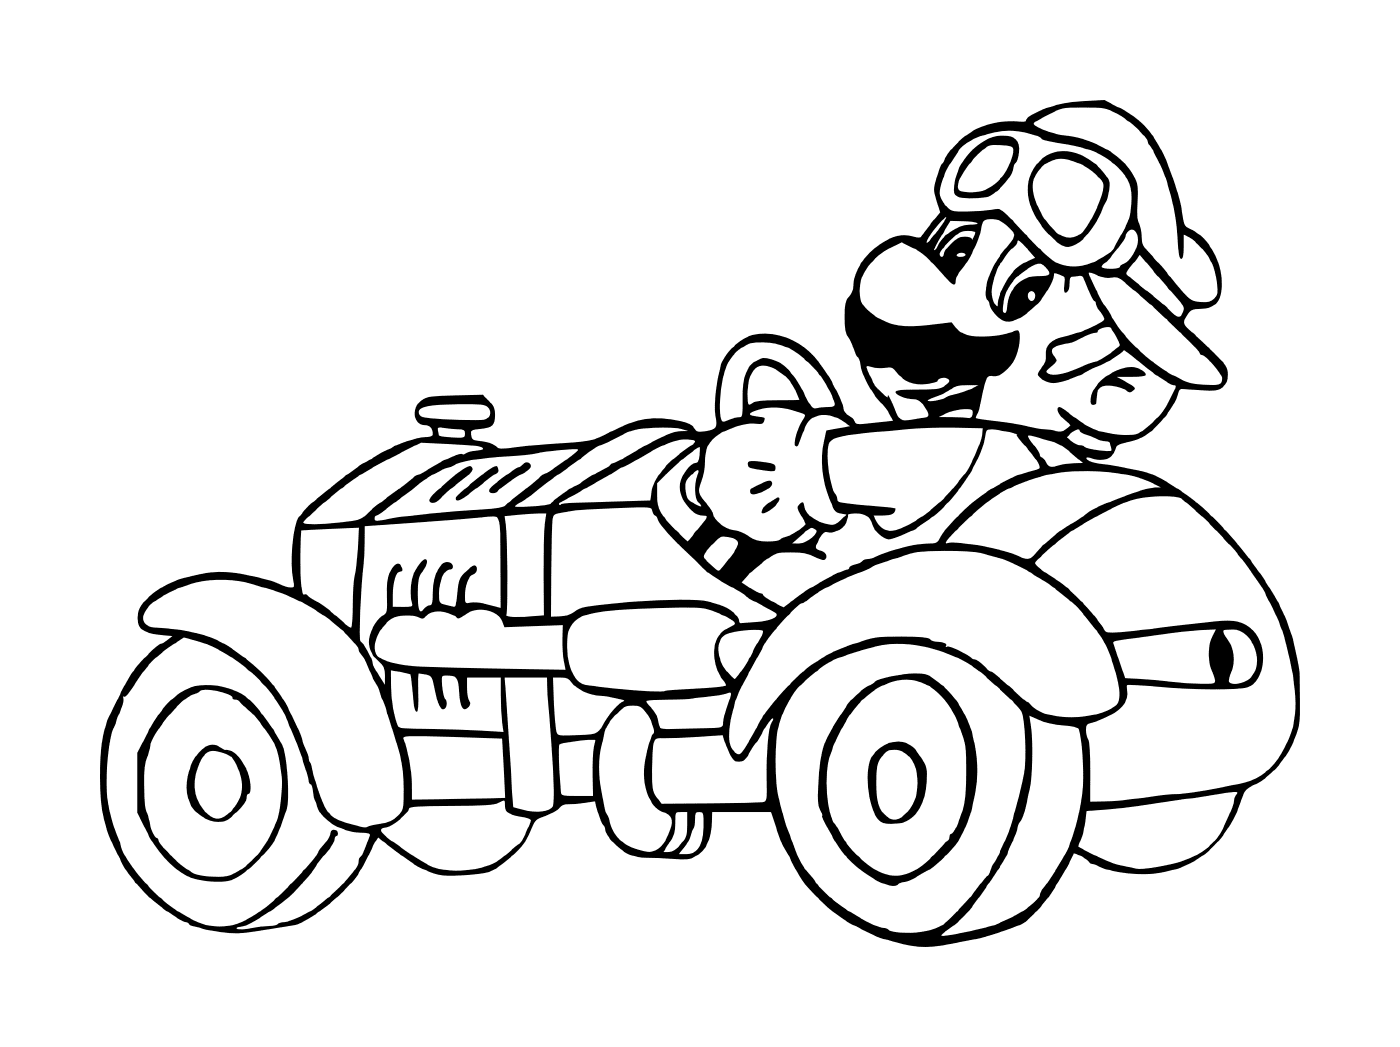  Mario Kart coche viejo 